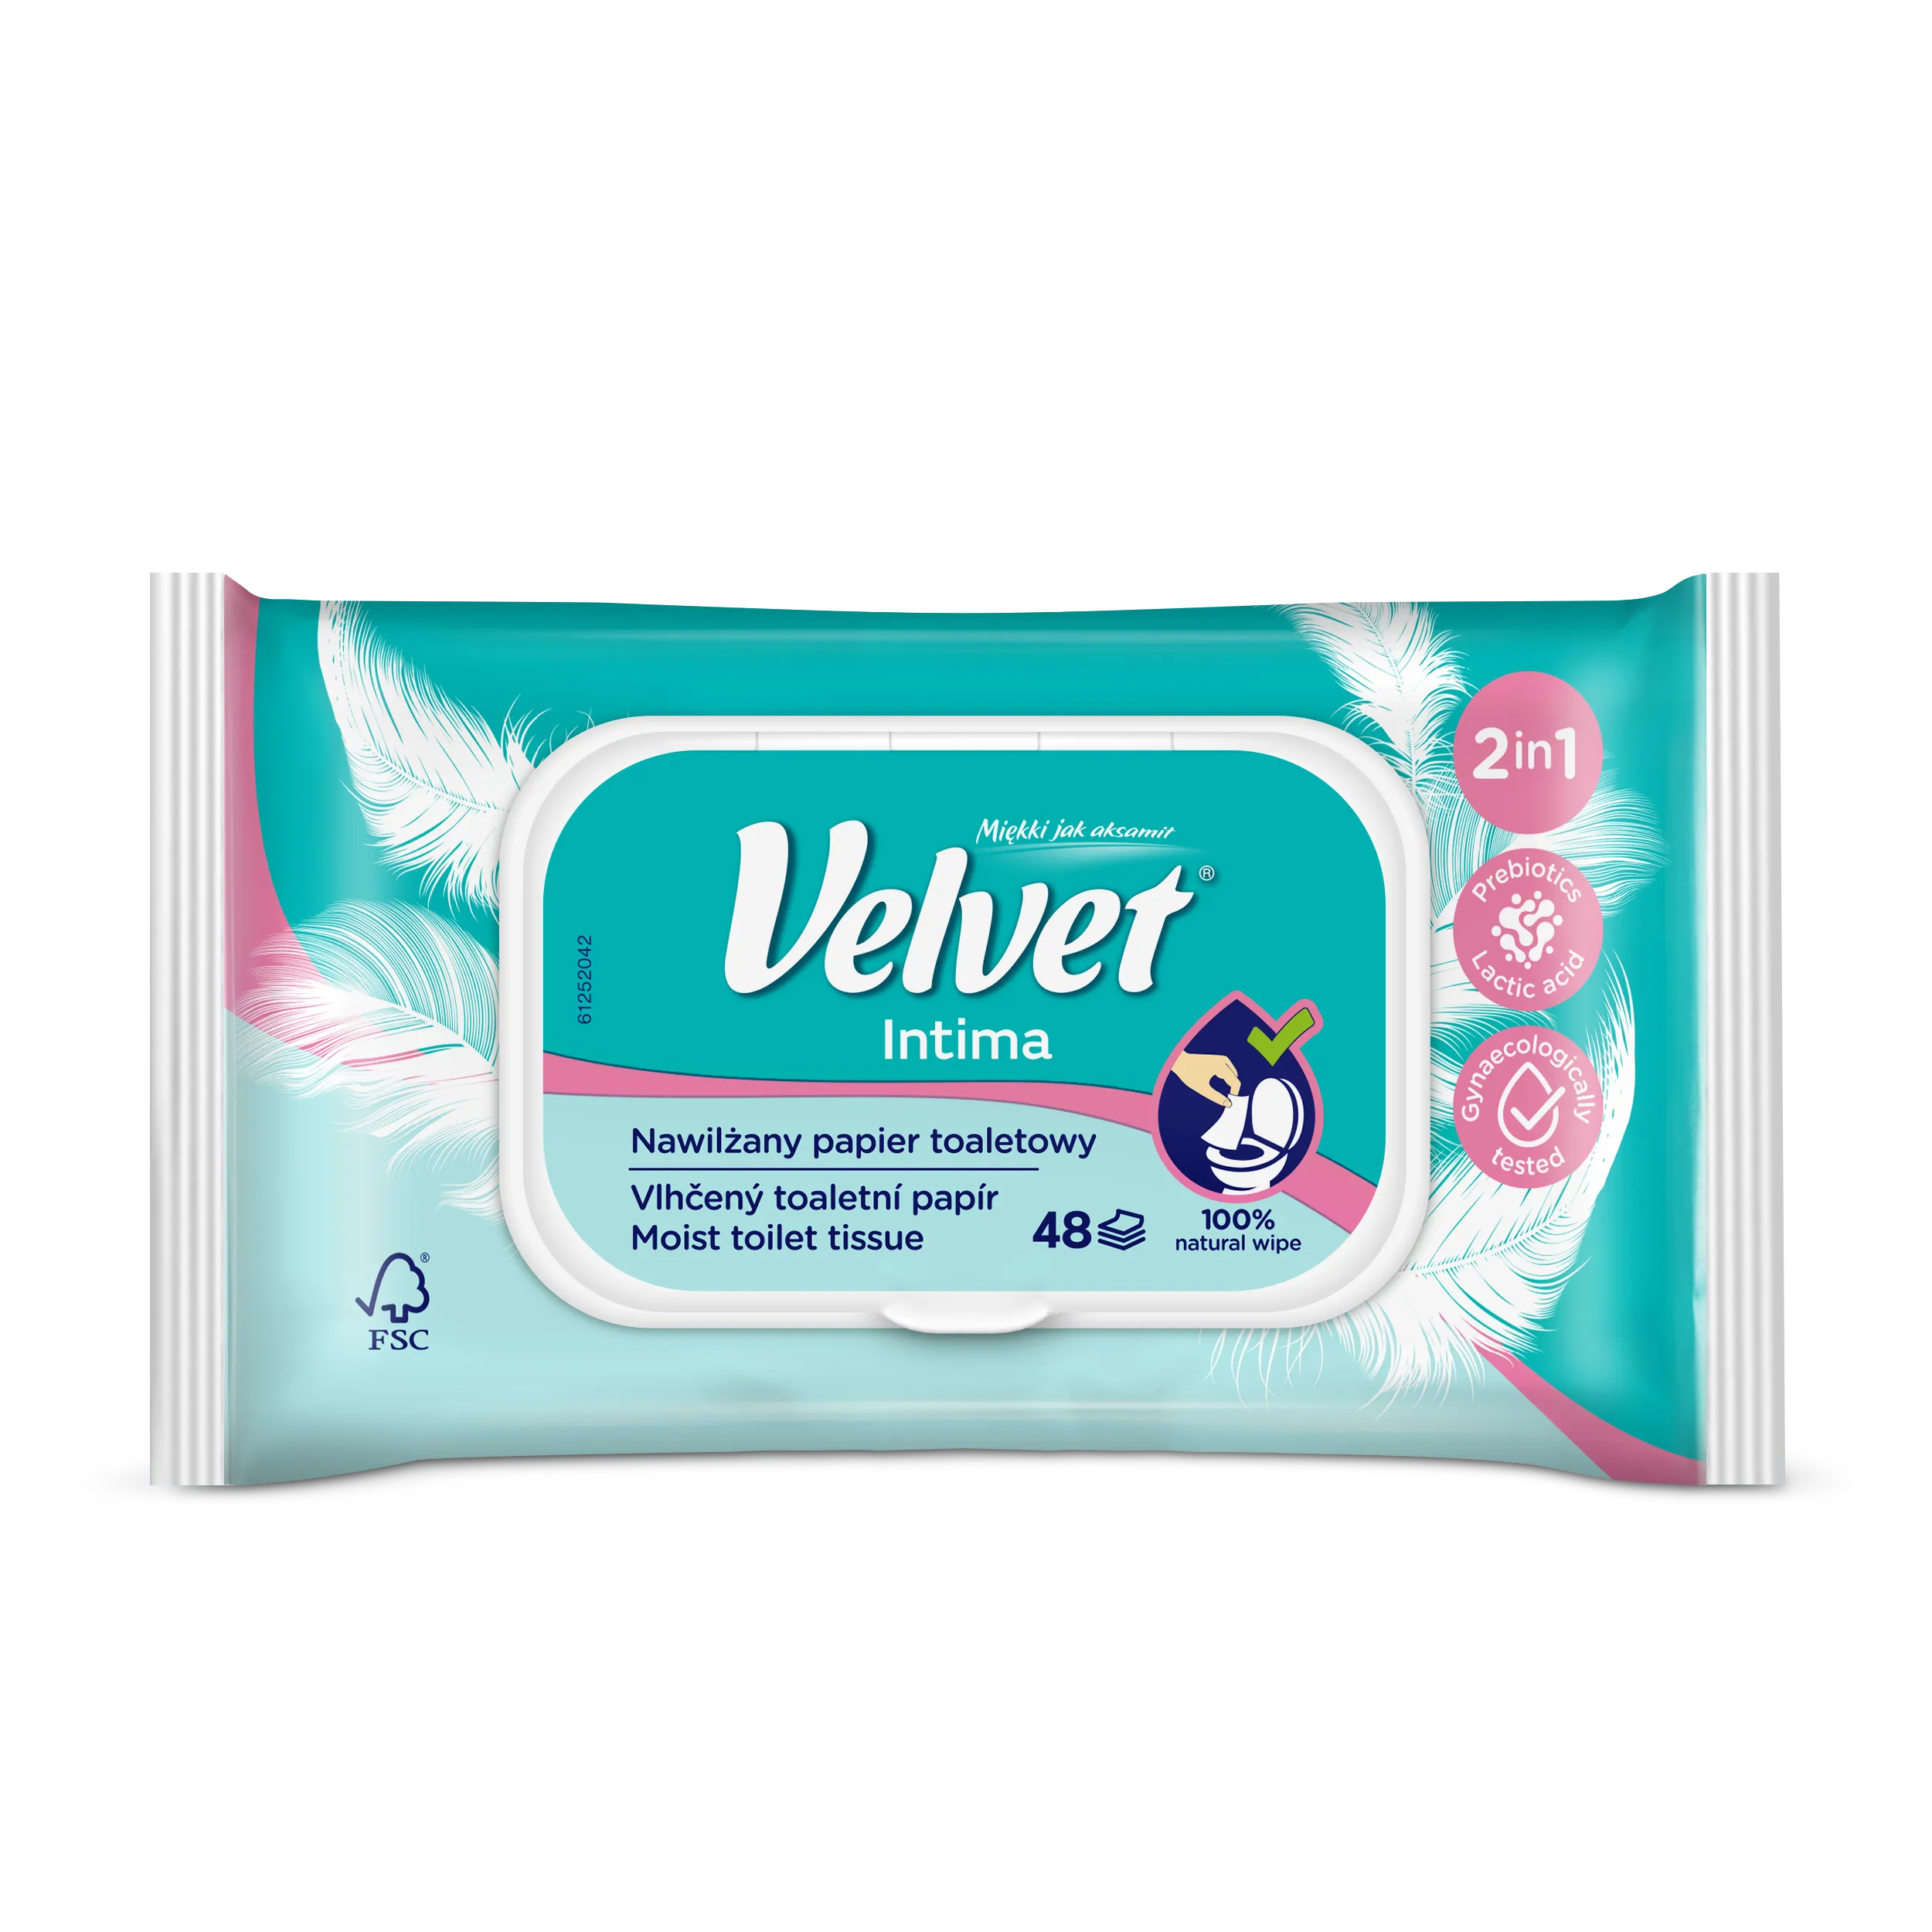 Velvet Intima nawilżany papier toaletowy dla kobiet, 1 szt.